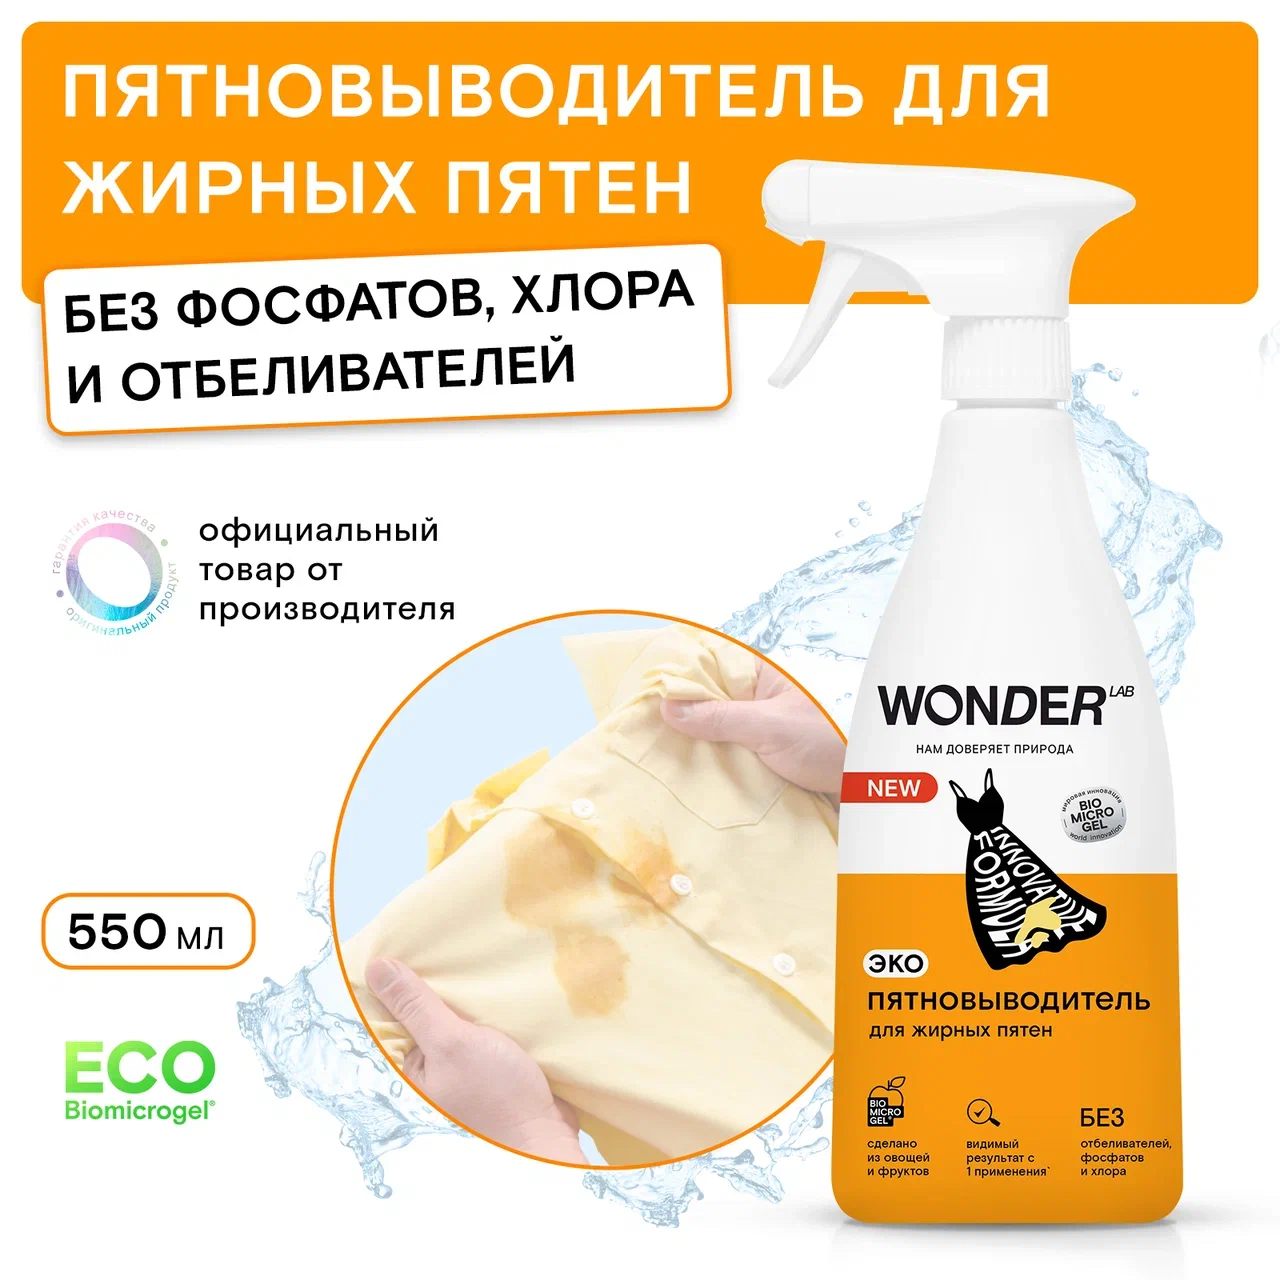 Пятновыводитель Wonder Lab для жирных пятен 550 мл - купить в Мегамаркет Москва Пушкино, цена на Мегамаркет